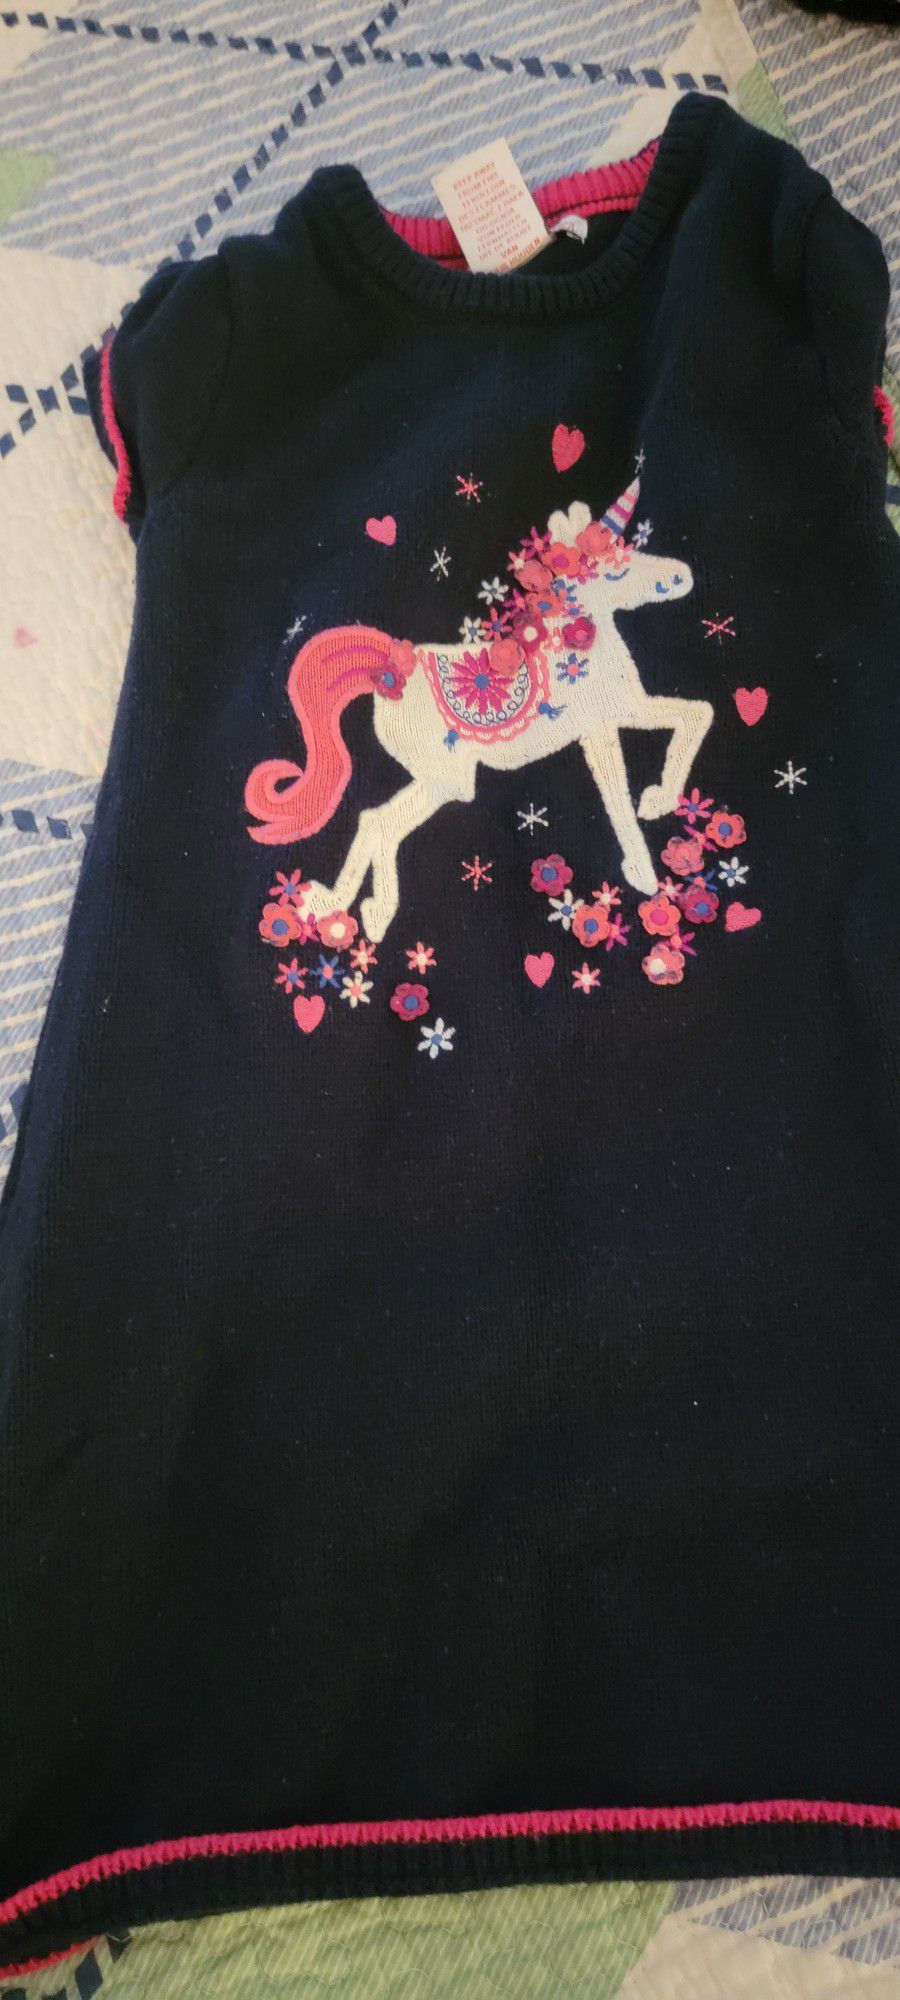 Unicorn Sweater Dress